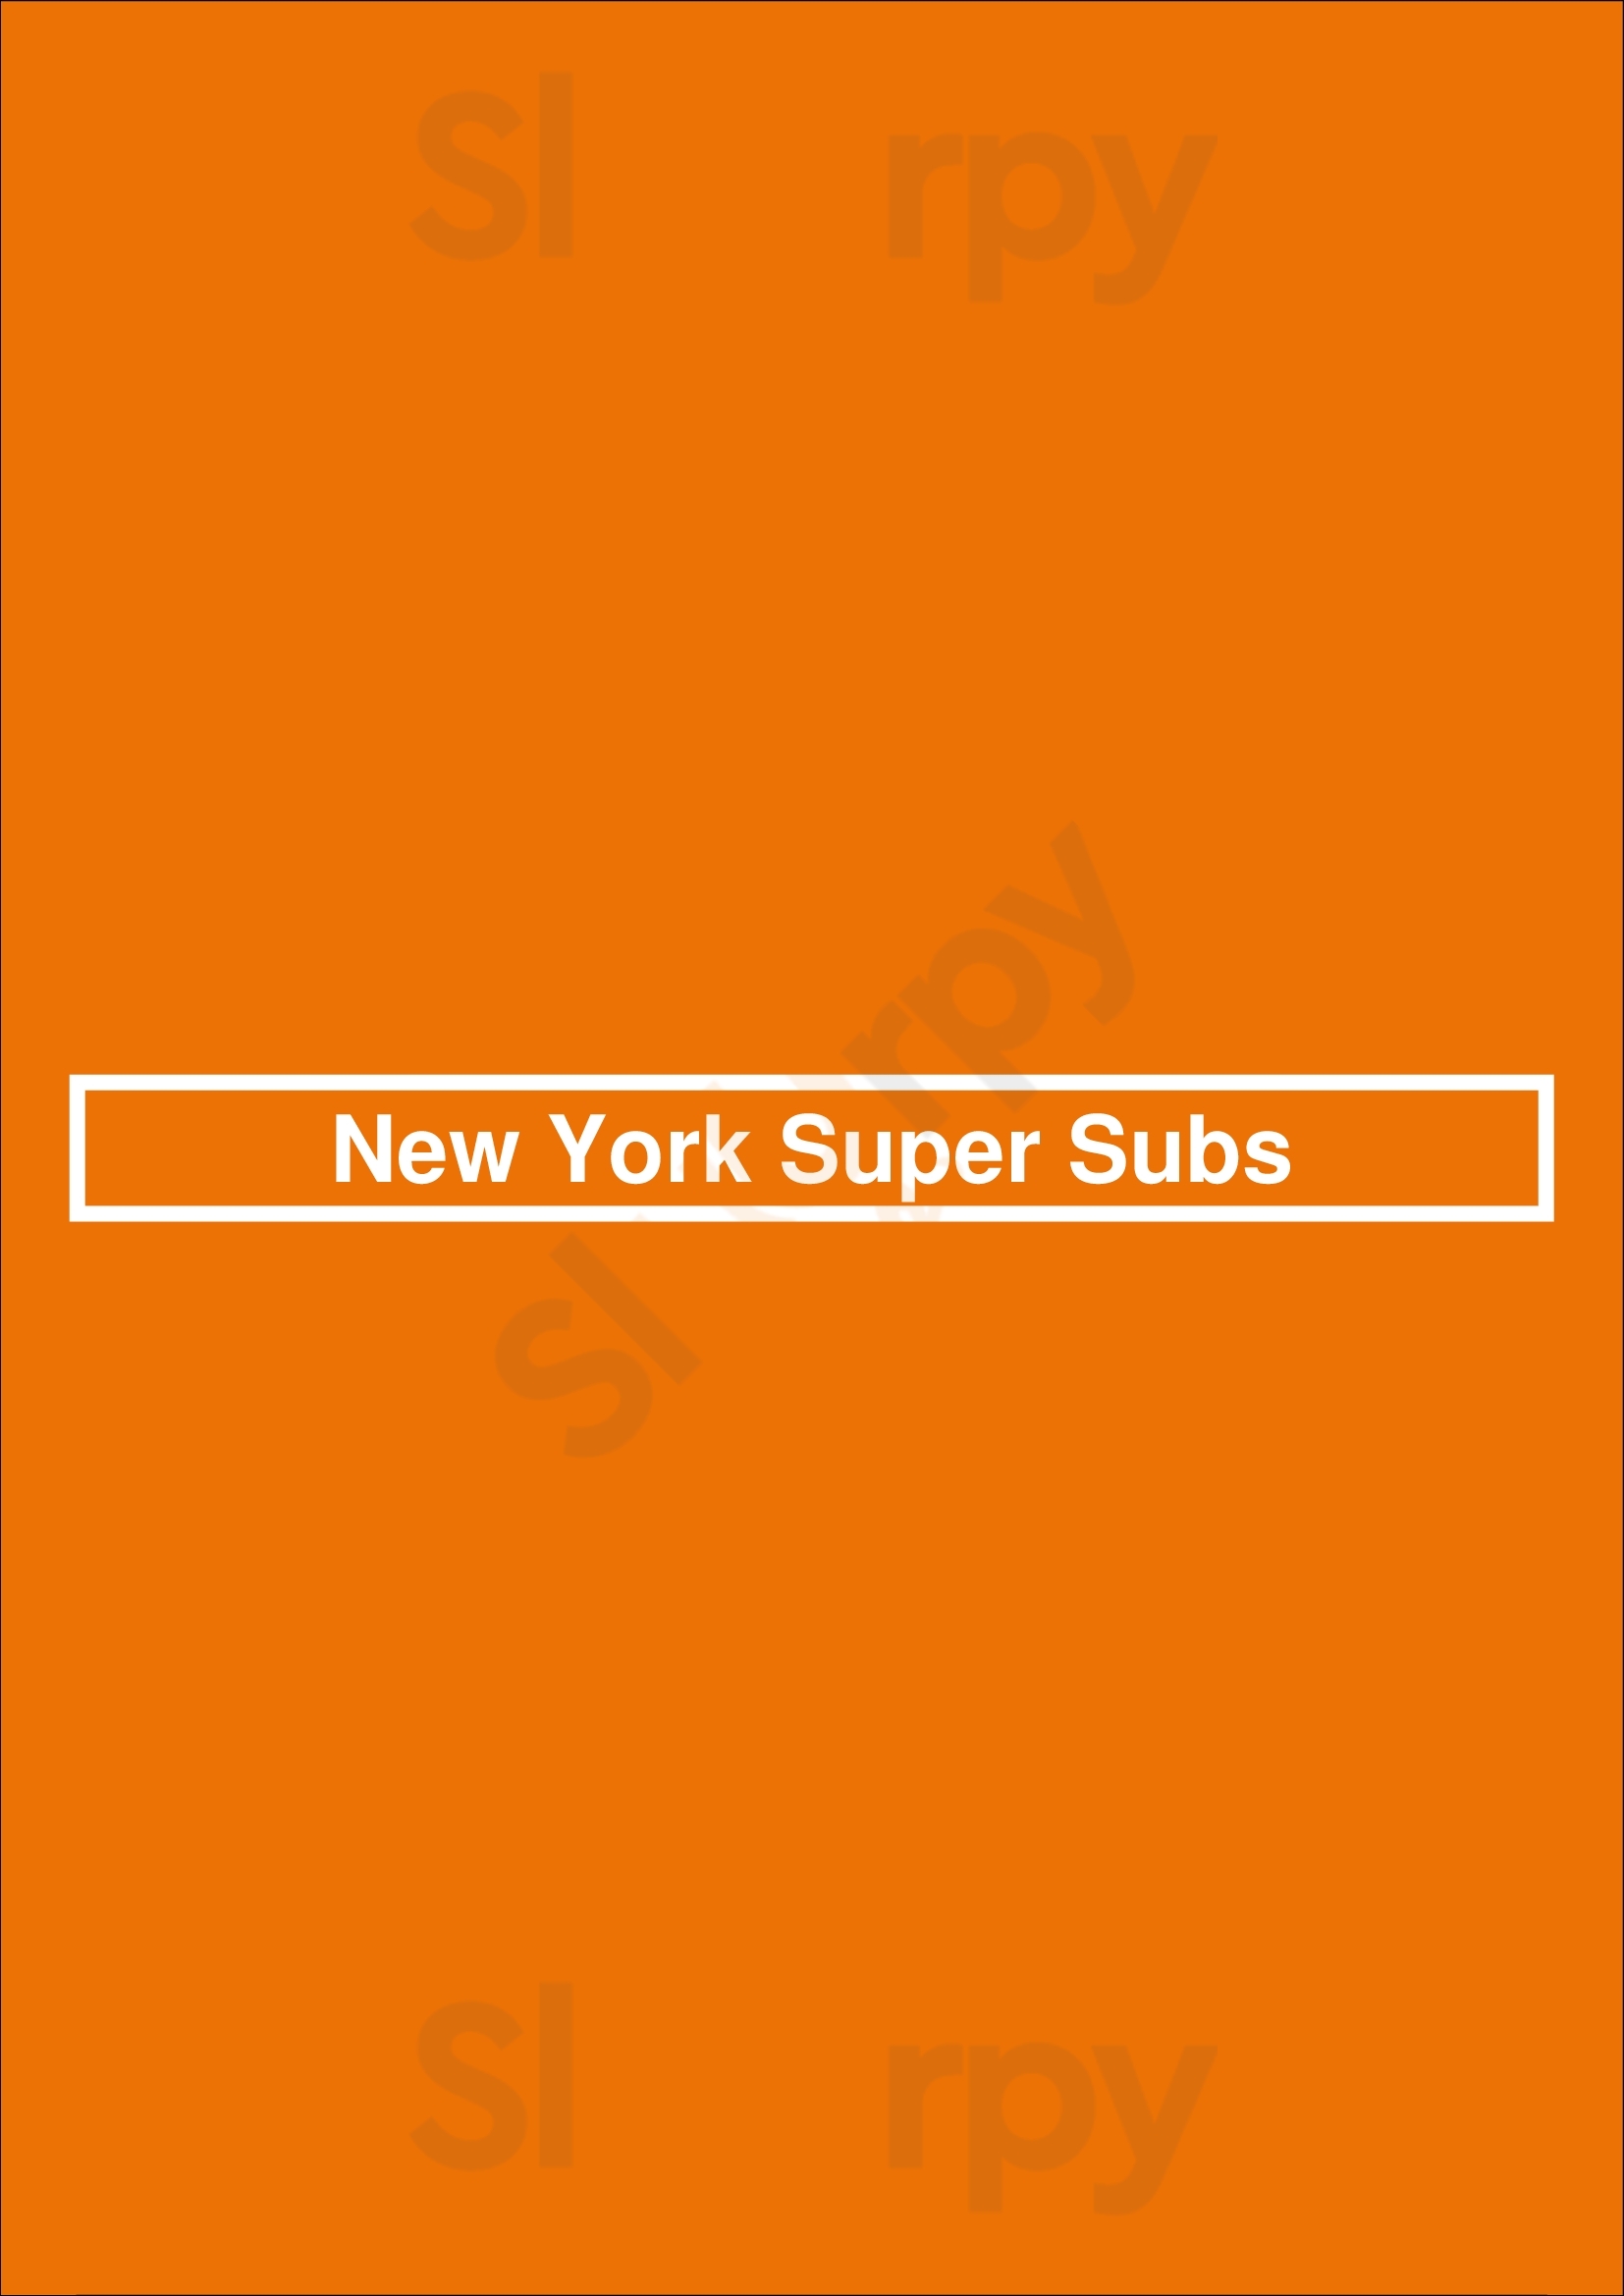 New York Super Subs Pittsburgh Menu - 1